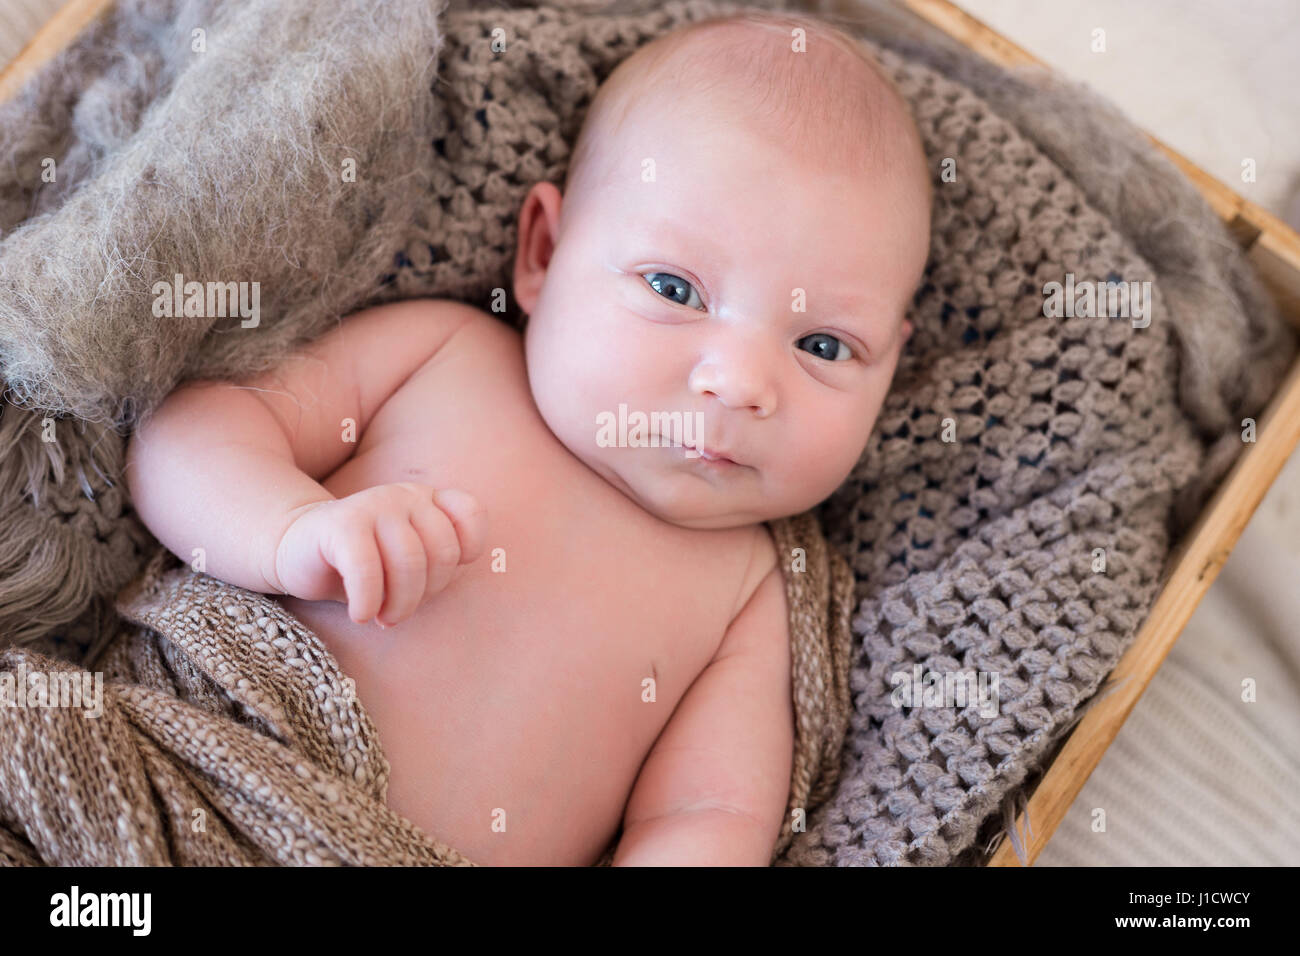 Retrato De Un Lindo Bebé De 6 Meses Tendido Sobre Una Manta. Bebé Pequeño Y  Feliz Imagen de archivo - Imagen de piernas, cama: 229421629